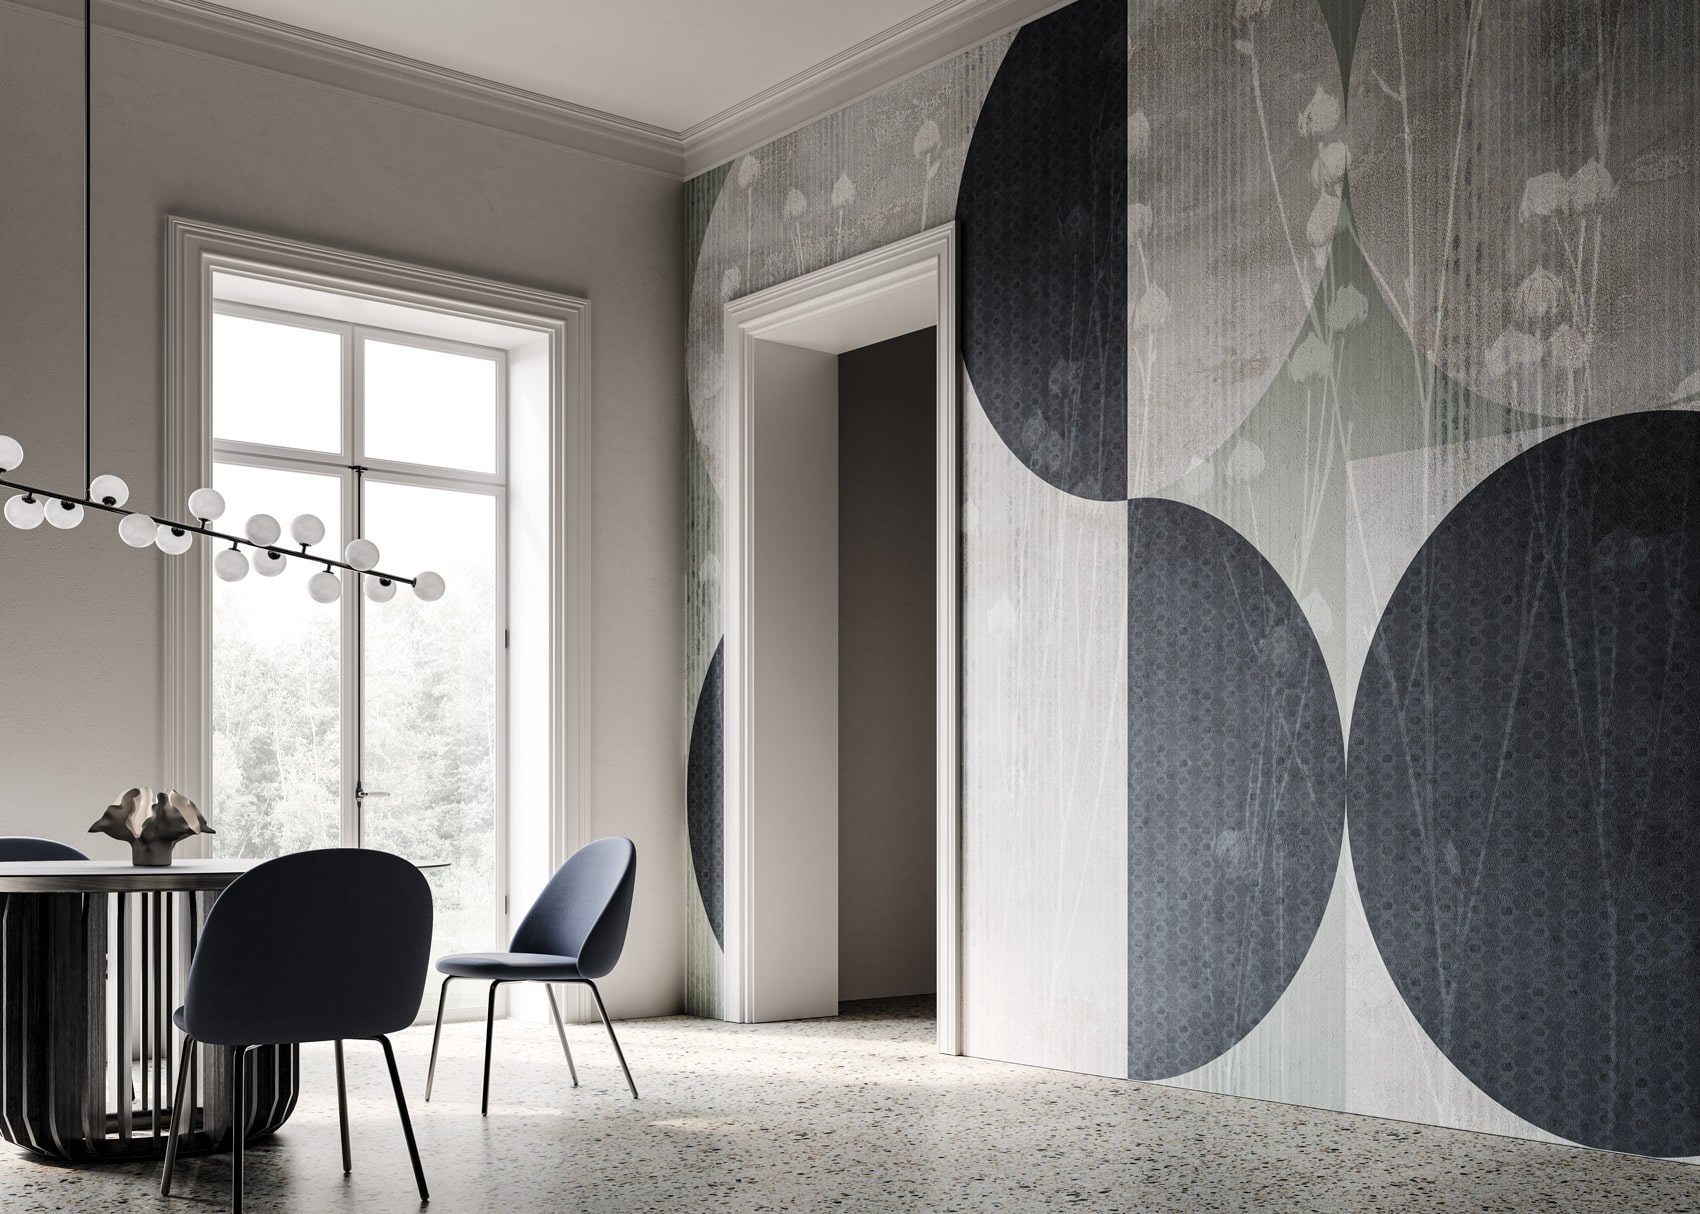 El Papel pintado Moderno de Instabilelab revoluciona con estilo, lujo y elegancia el diseño de interiores. Descubre las refinadas colecciones.